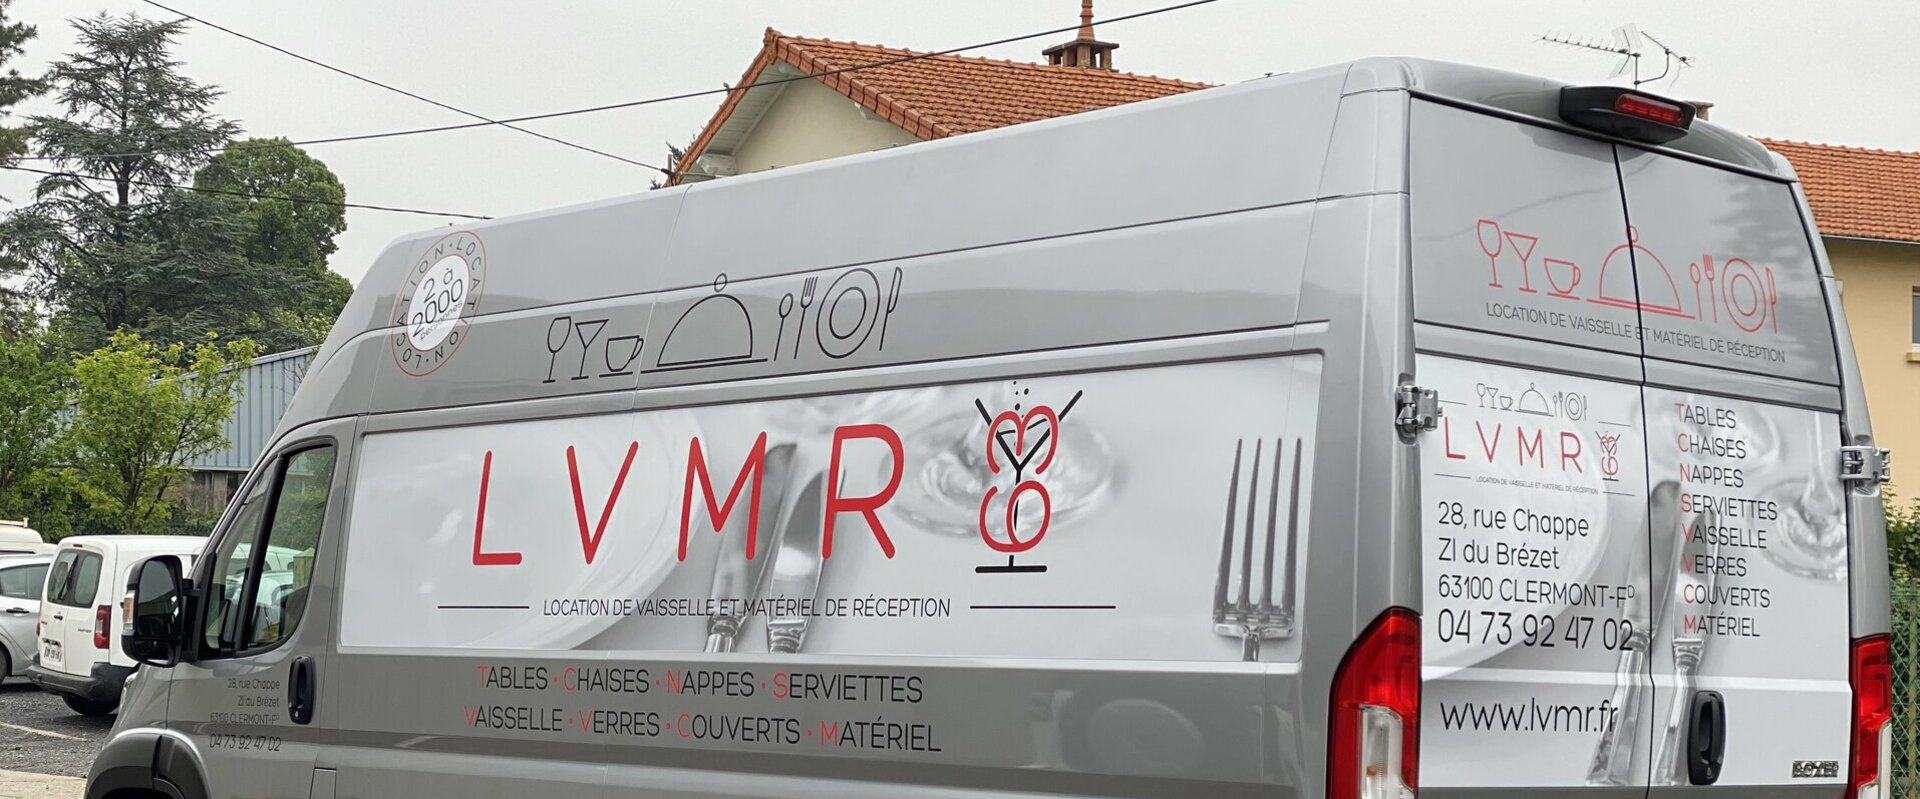 Pour contacter LVMR 63 (Clermont-Ferrand)